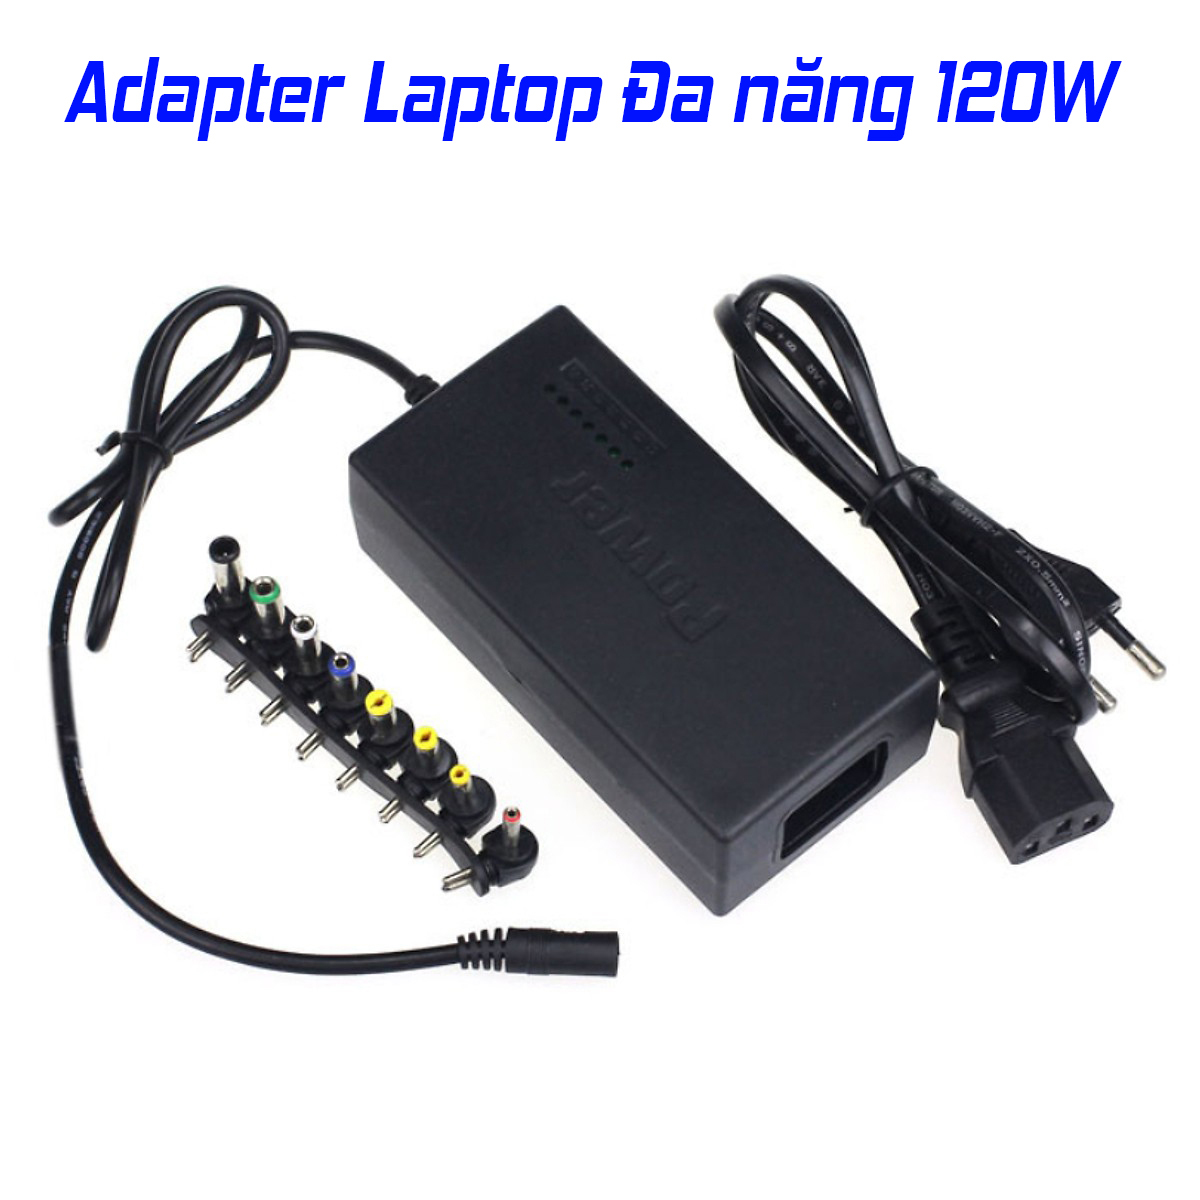 Adapter Sạc Đa Năng 120W 8 Đầu Cho Laptop Và Các Thiết Bị Khác